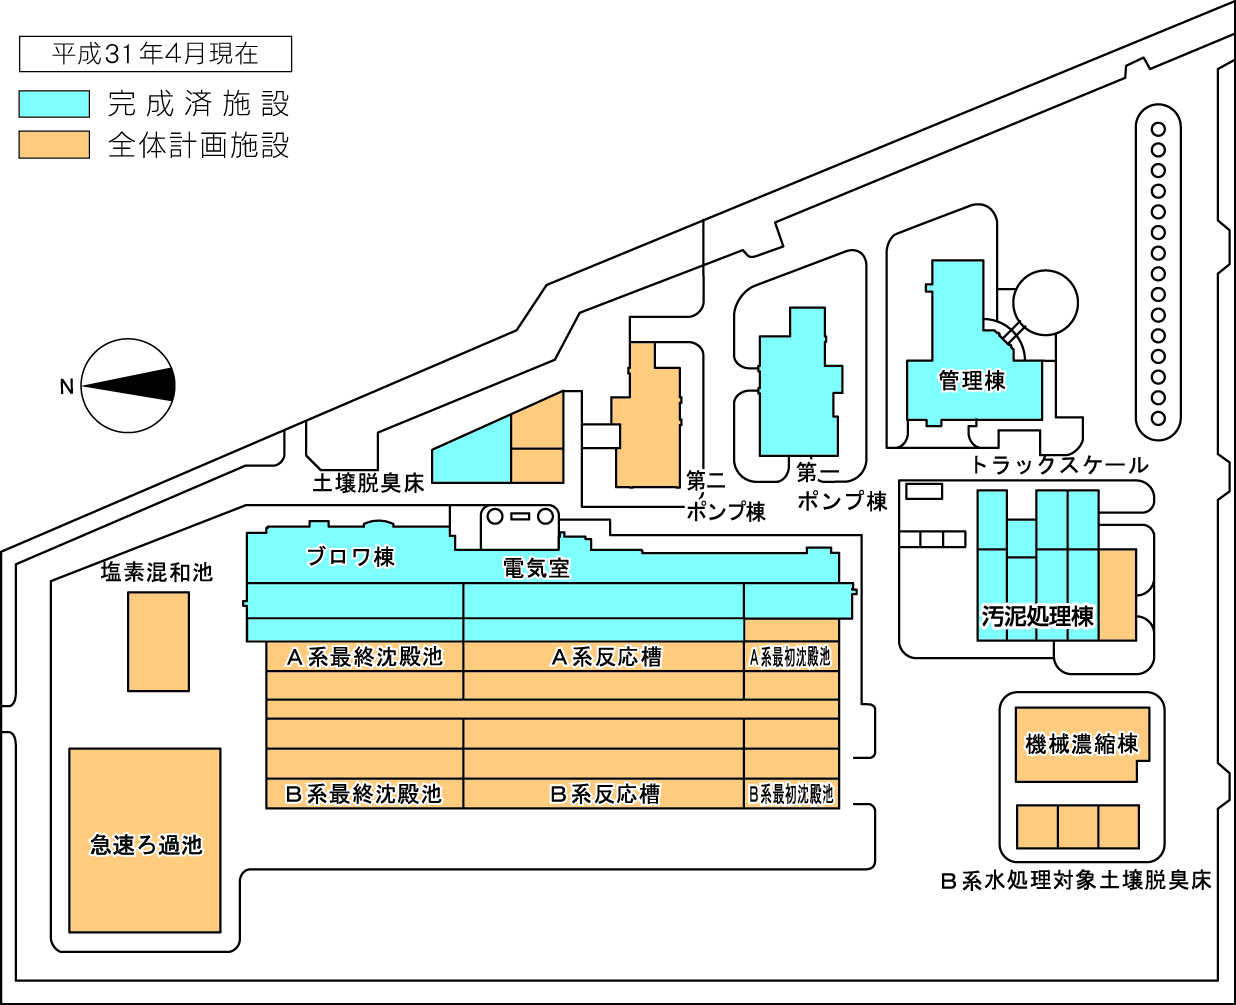 遠賀川中流浄化センターの配置図です。中枢となる中央監視室や水質試験室のある管理棟の奥にA系とB系でわかれる最初沈殿池、生物反応槽、最終沈殿池等の水処理施設があります。